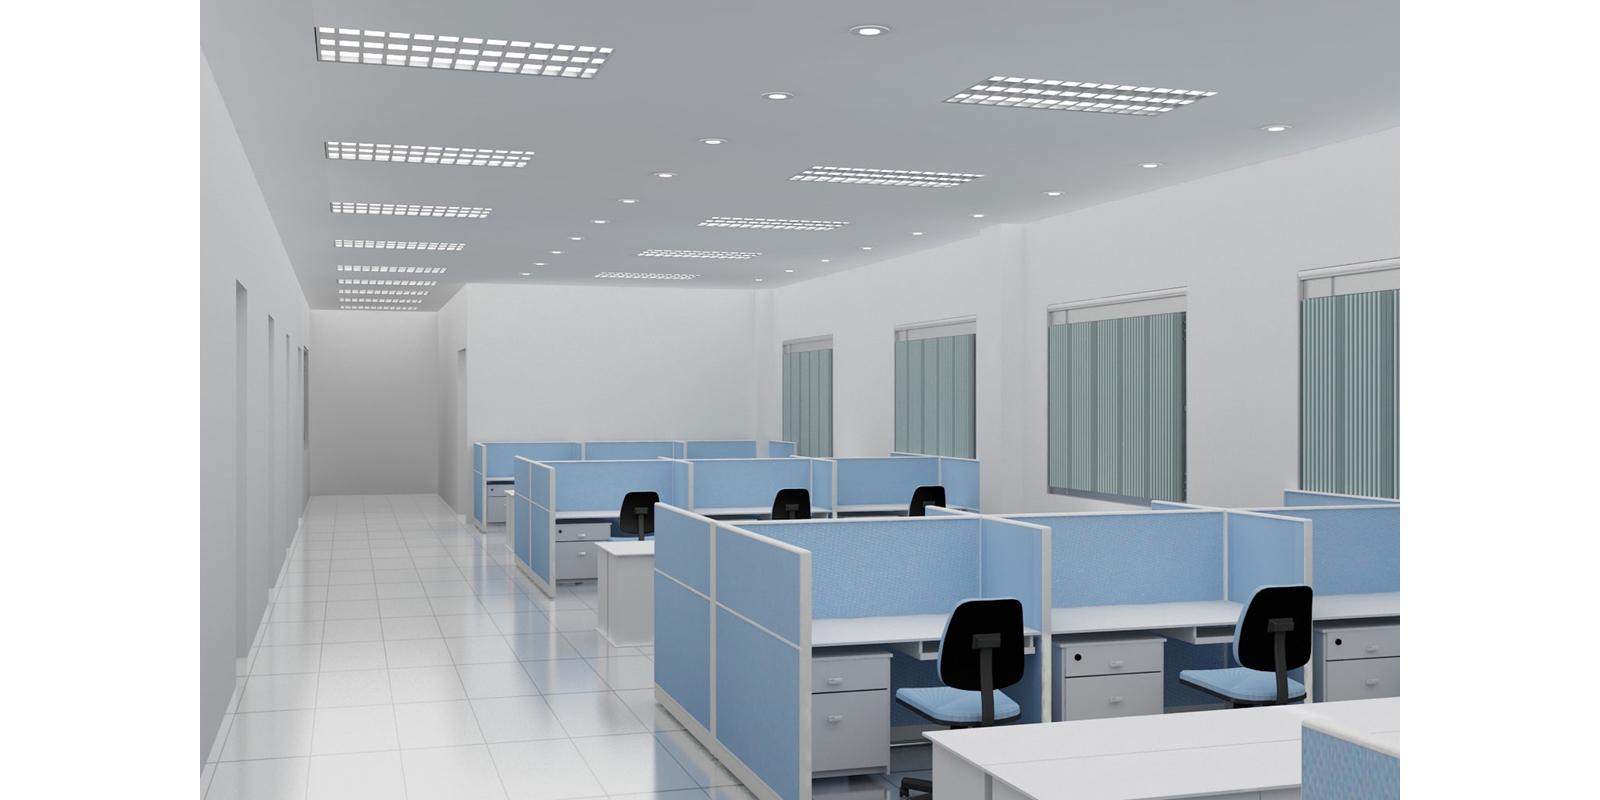 Vách ngăn văn phòng – không gian riêng tư ngay tại nơi làm việc - Nội thất cao cấp Gia Phát tại TPHCM